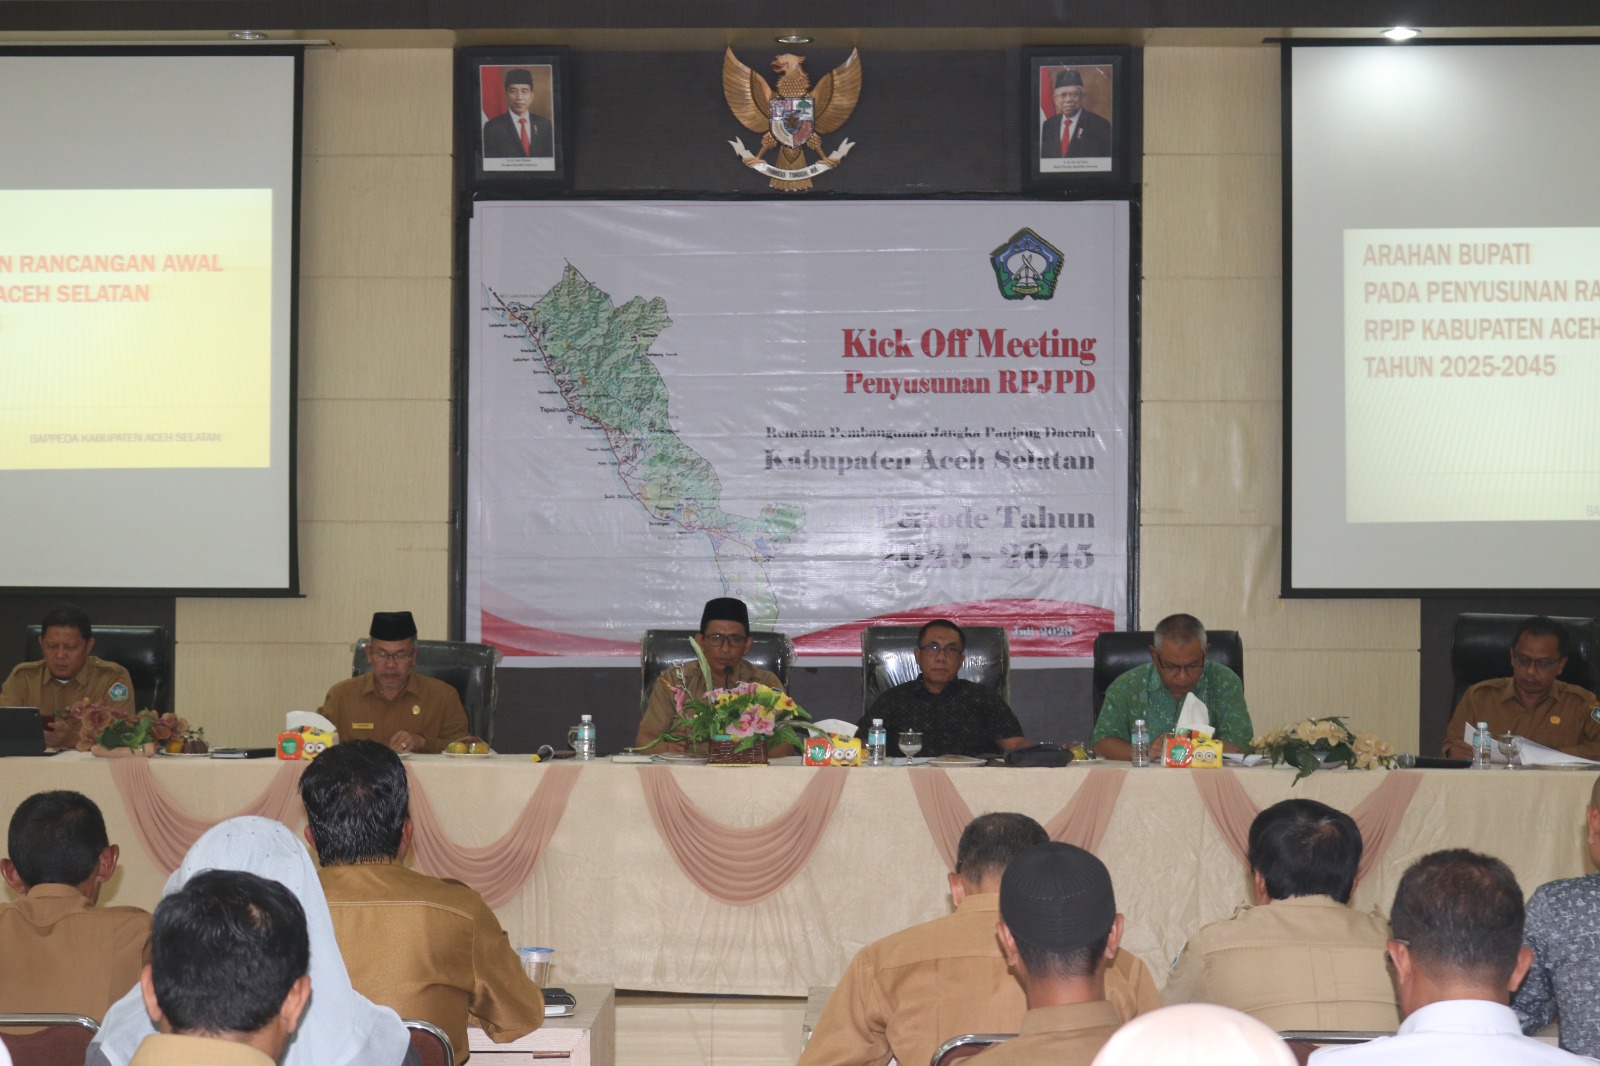 Pemkab Aceh Selatan Kick Off Meeting Persiapan Penyusunan RPJPD Tahun 2025-2045, Ini Kata Bupati